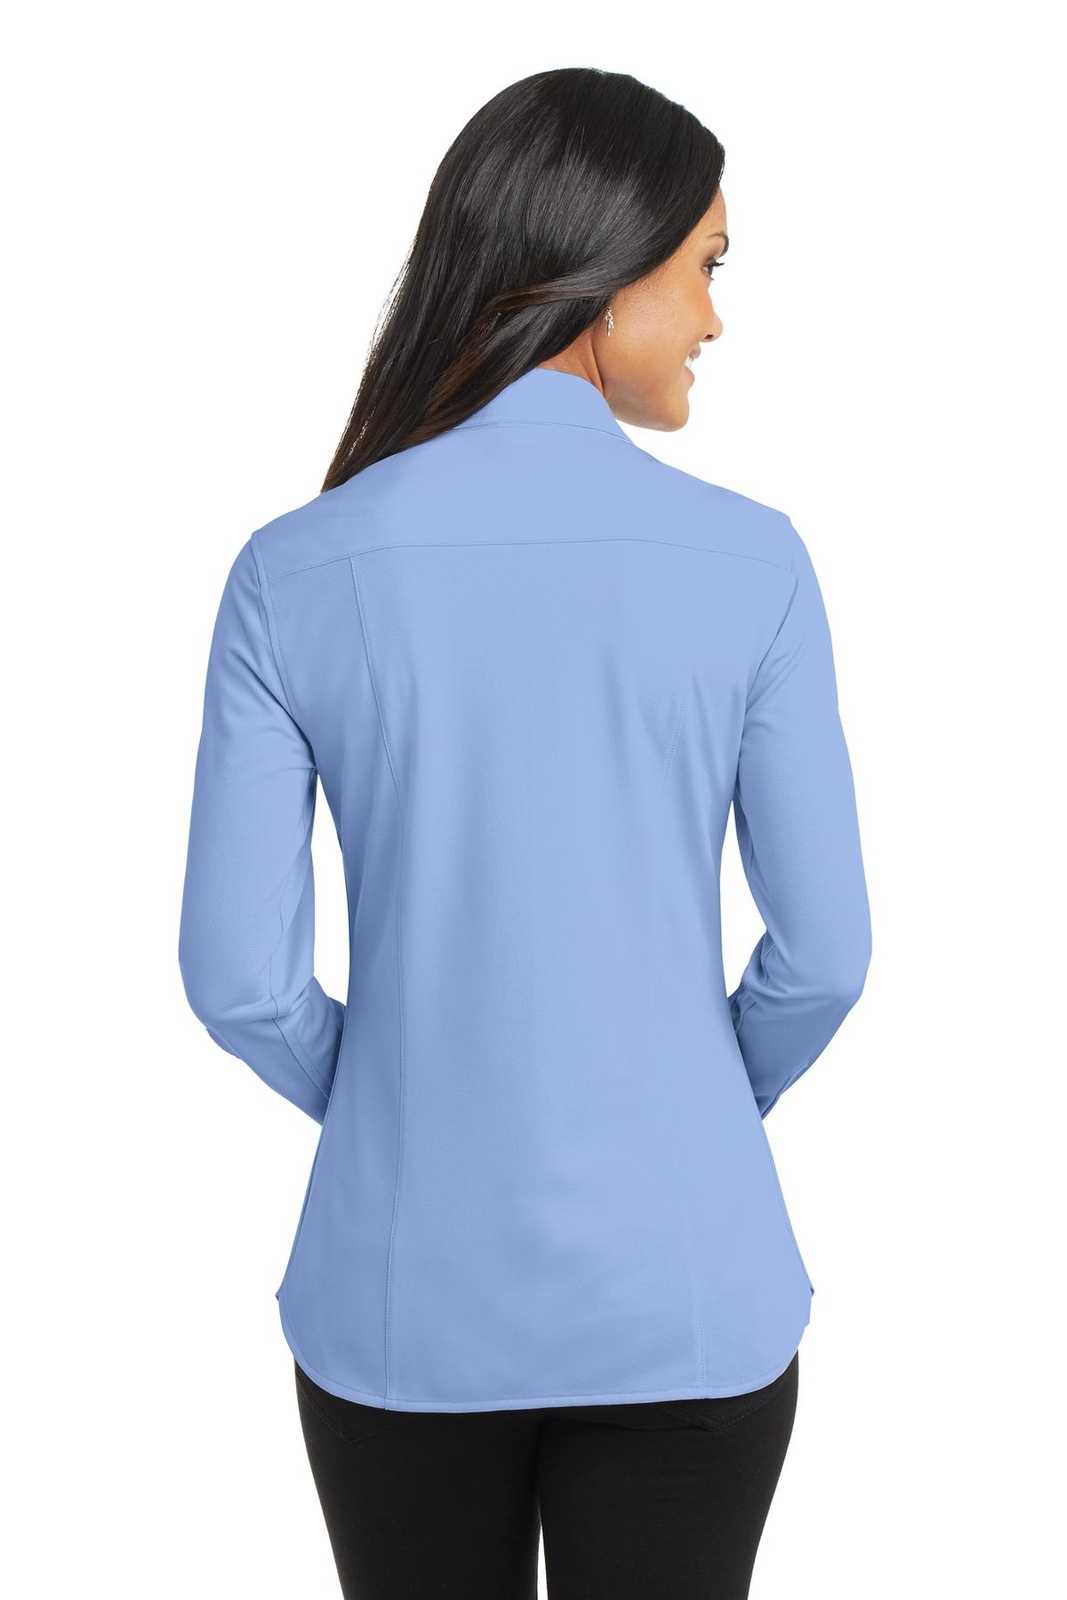 Port Authority L570 Ladies Dimension Knit Dress Shirt - Dress Shirt Blue - HIT a Double - 1